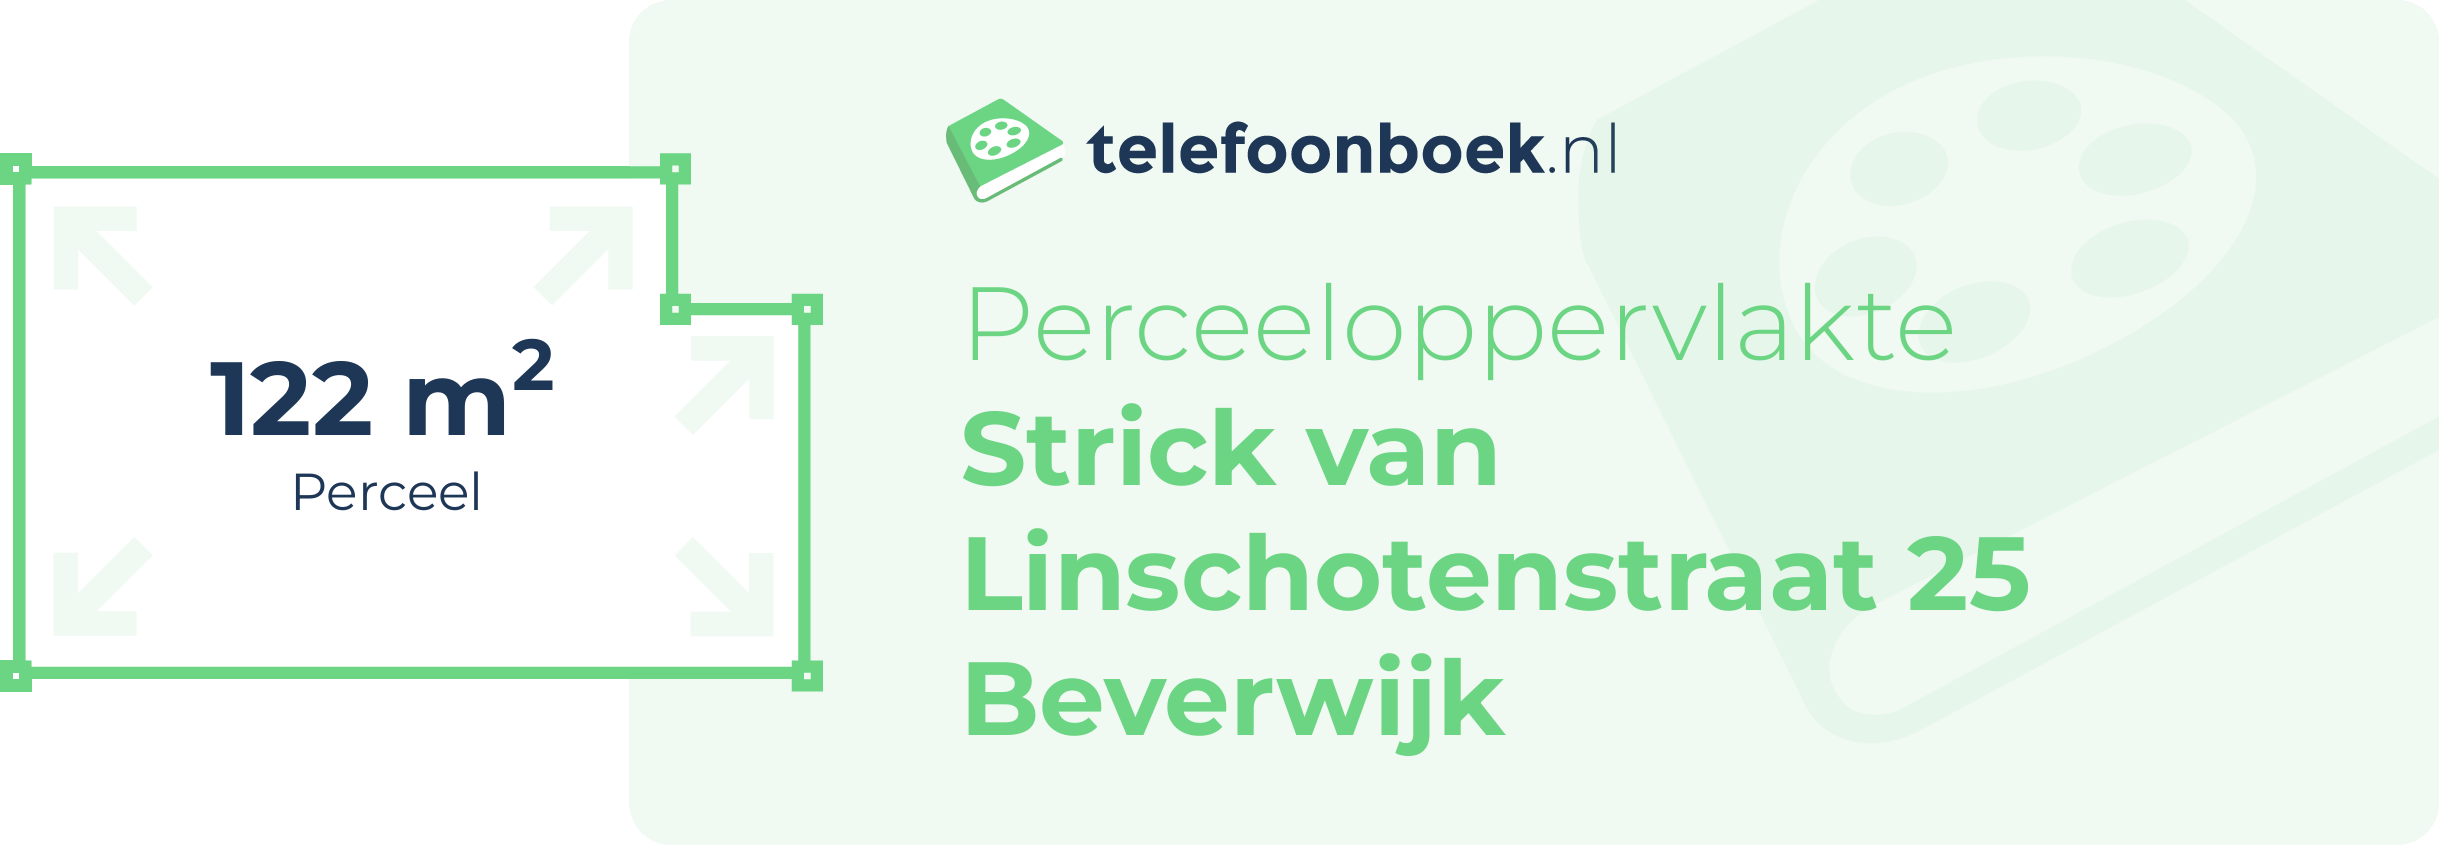 Perceeloppervlakte Strick Van Linschotenstraat 25 Beverwijk